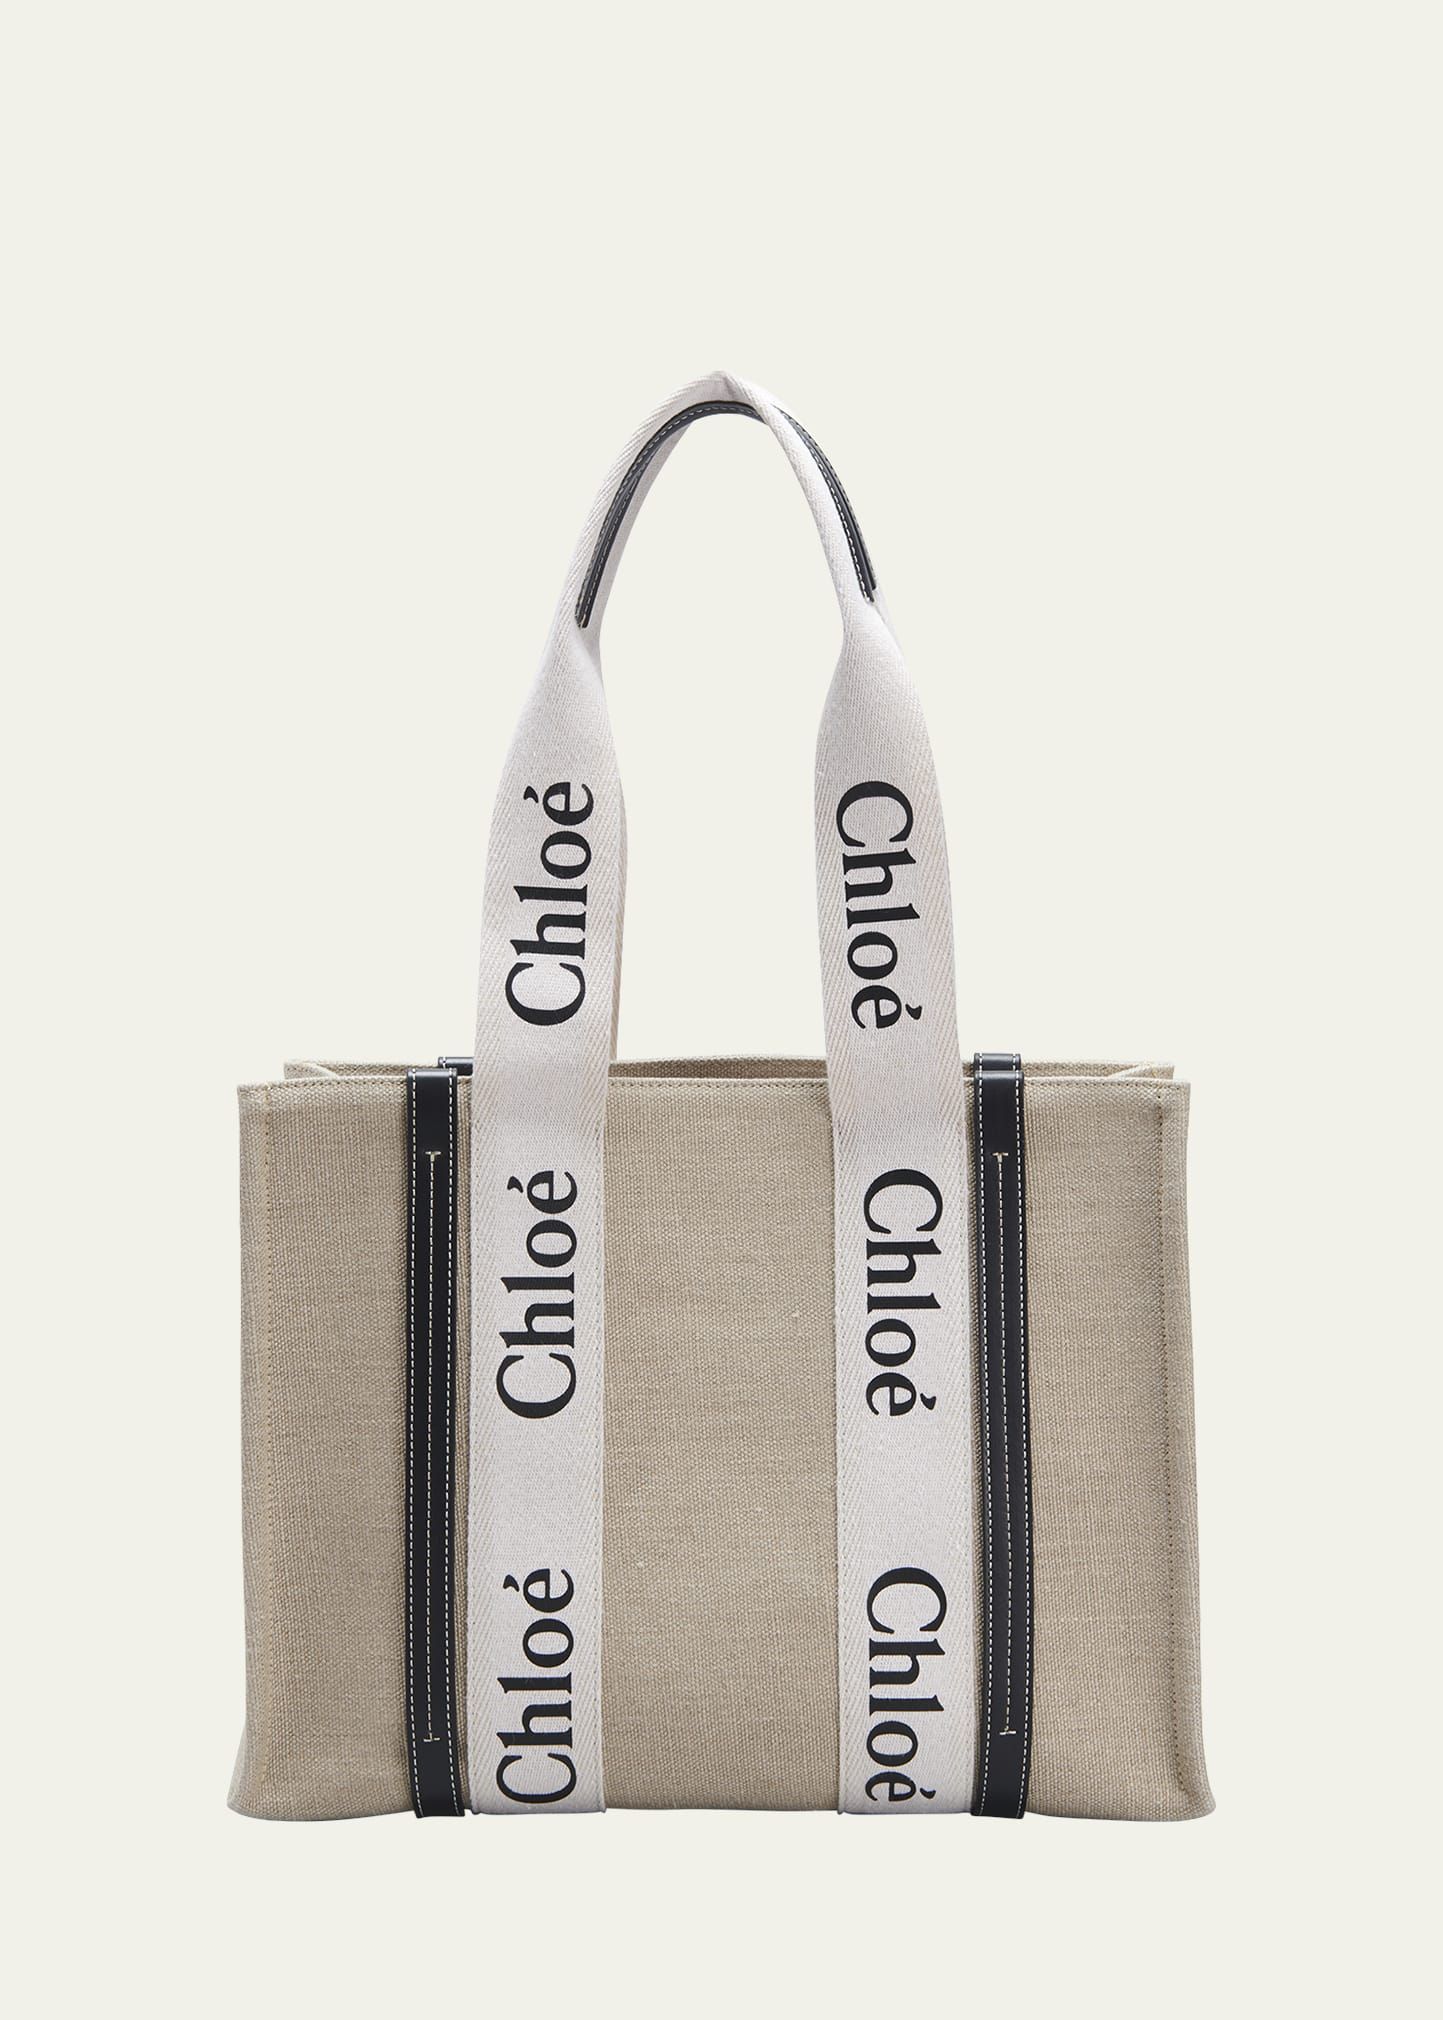 Chloe Woody Medium Tote Bag in Linen | Bergdorf Goodman